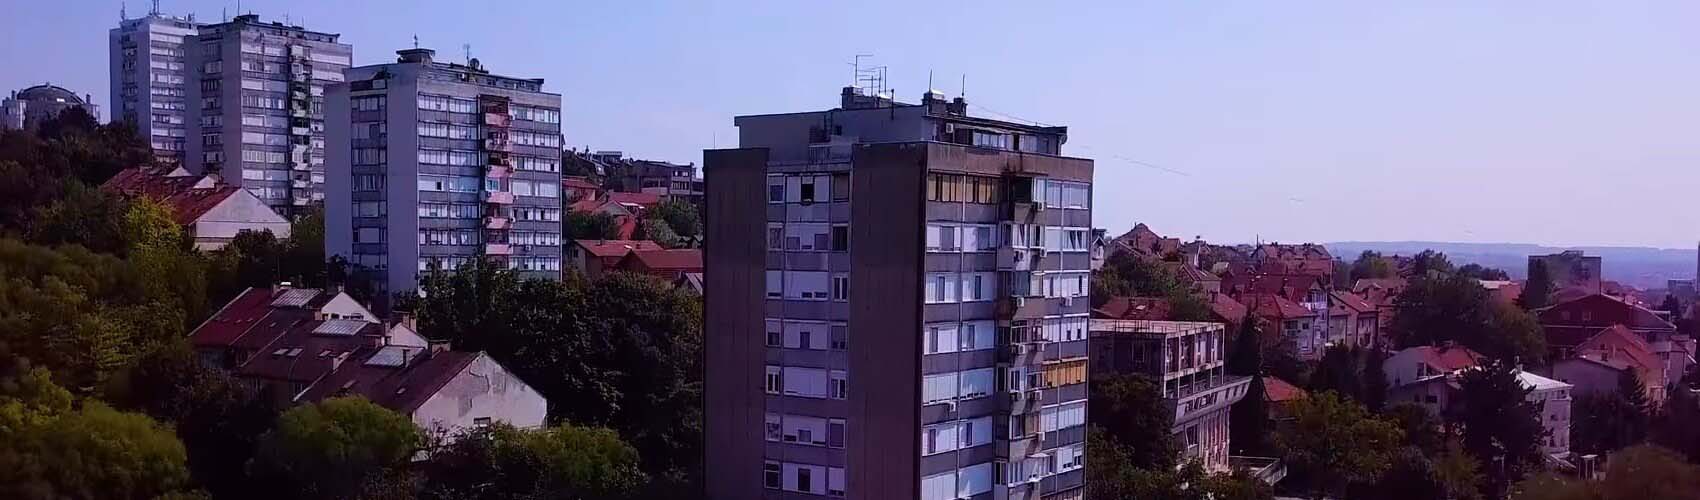 Kasko osiguranje Beograd | Banovo brdo